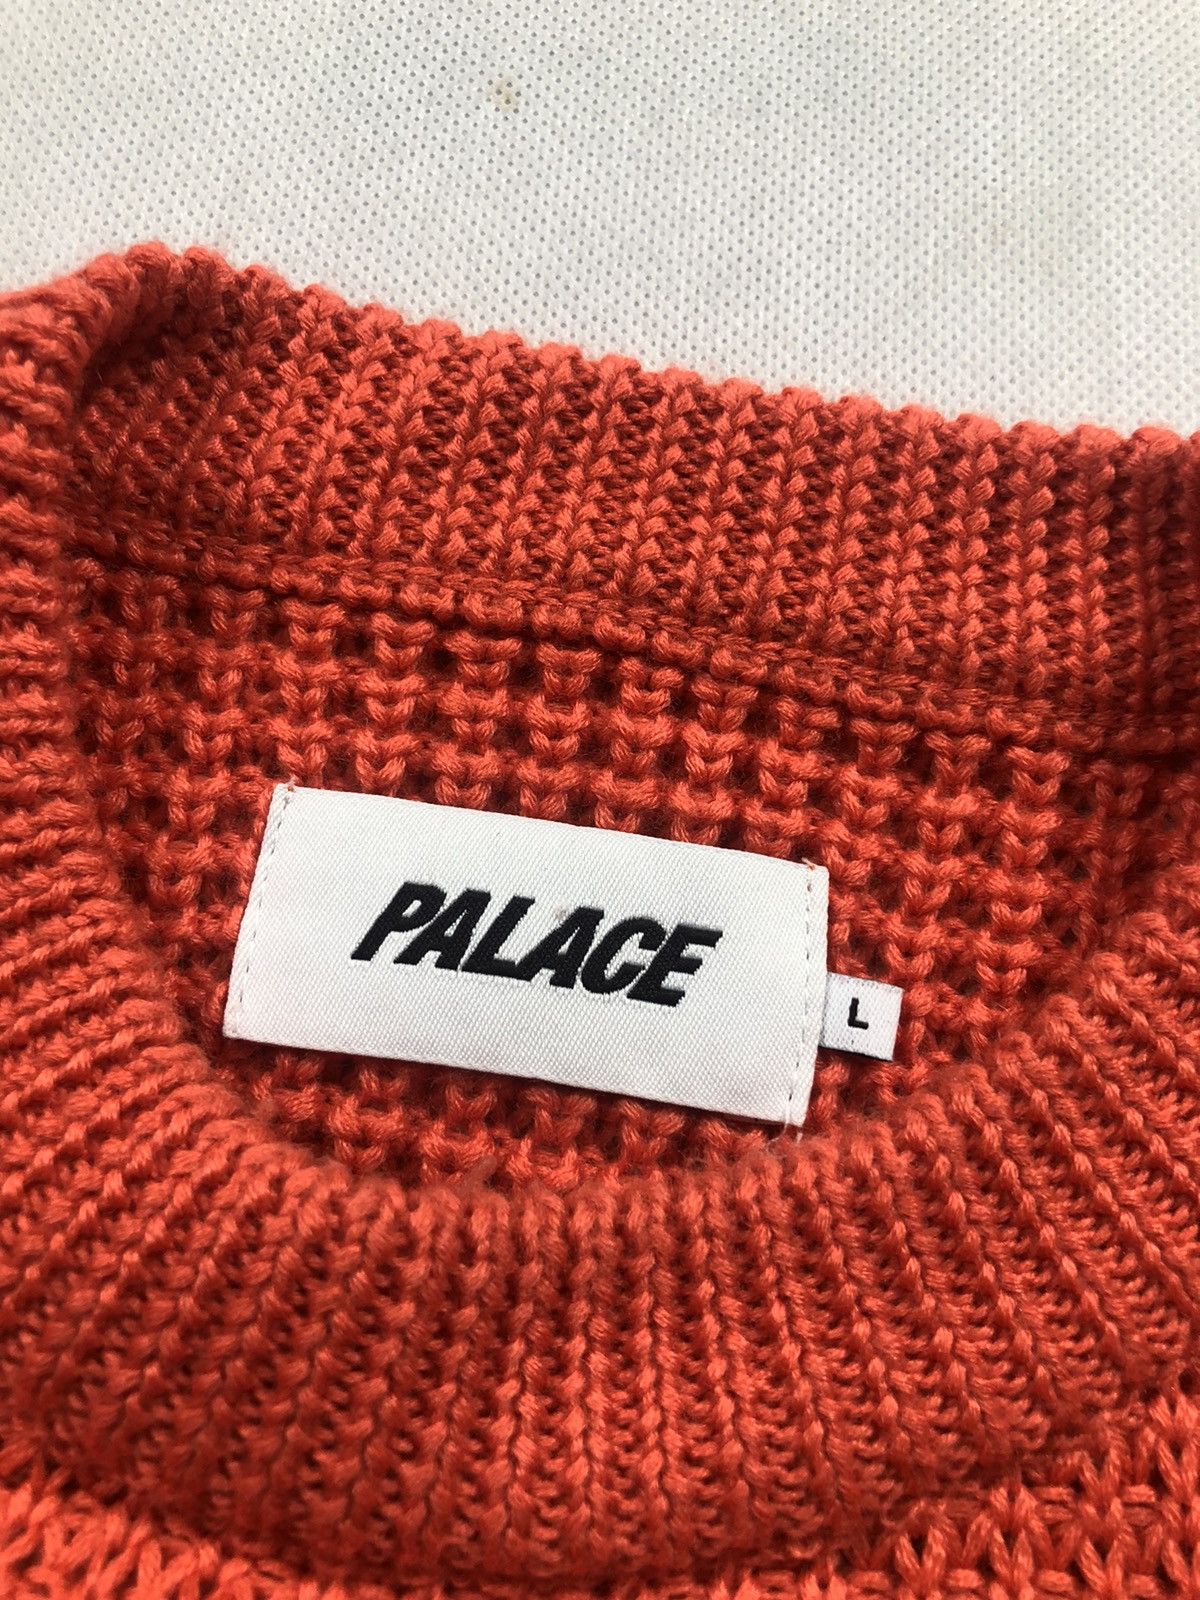 Palace Palace sweater C-Hunky Knit size L Size US L / EU 52-54 / 3 - 3 Thumbnail